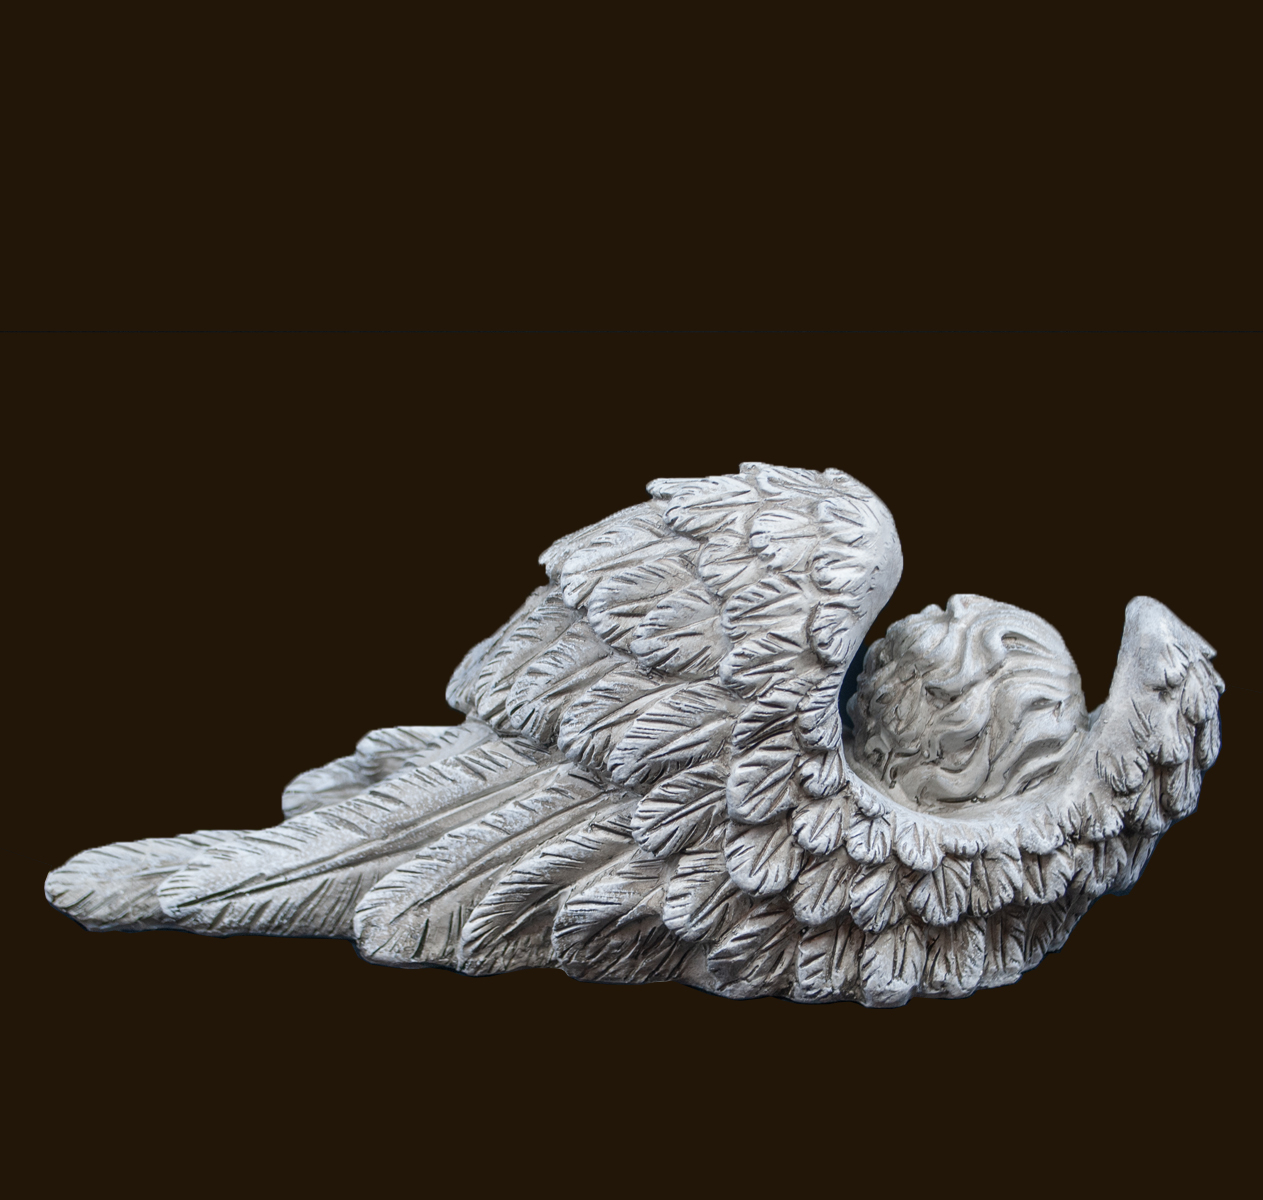 Engel in Flügel «Ruhe in Frieden» Höhe: 10 cm